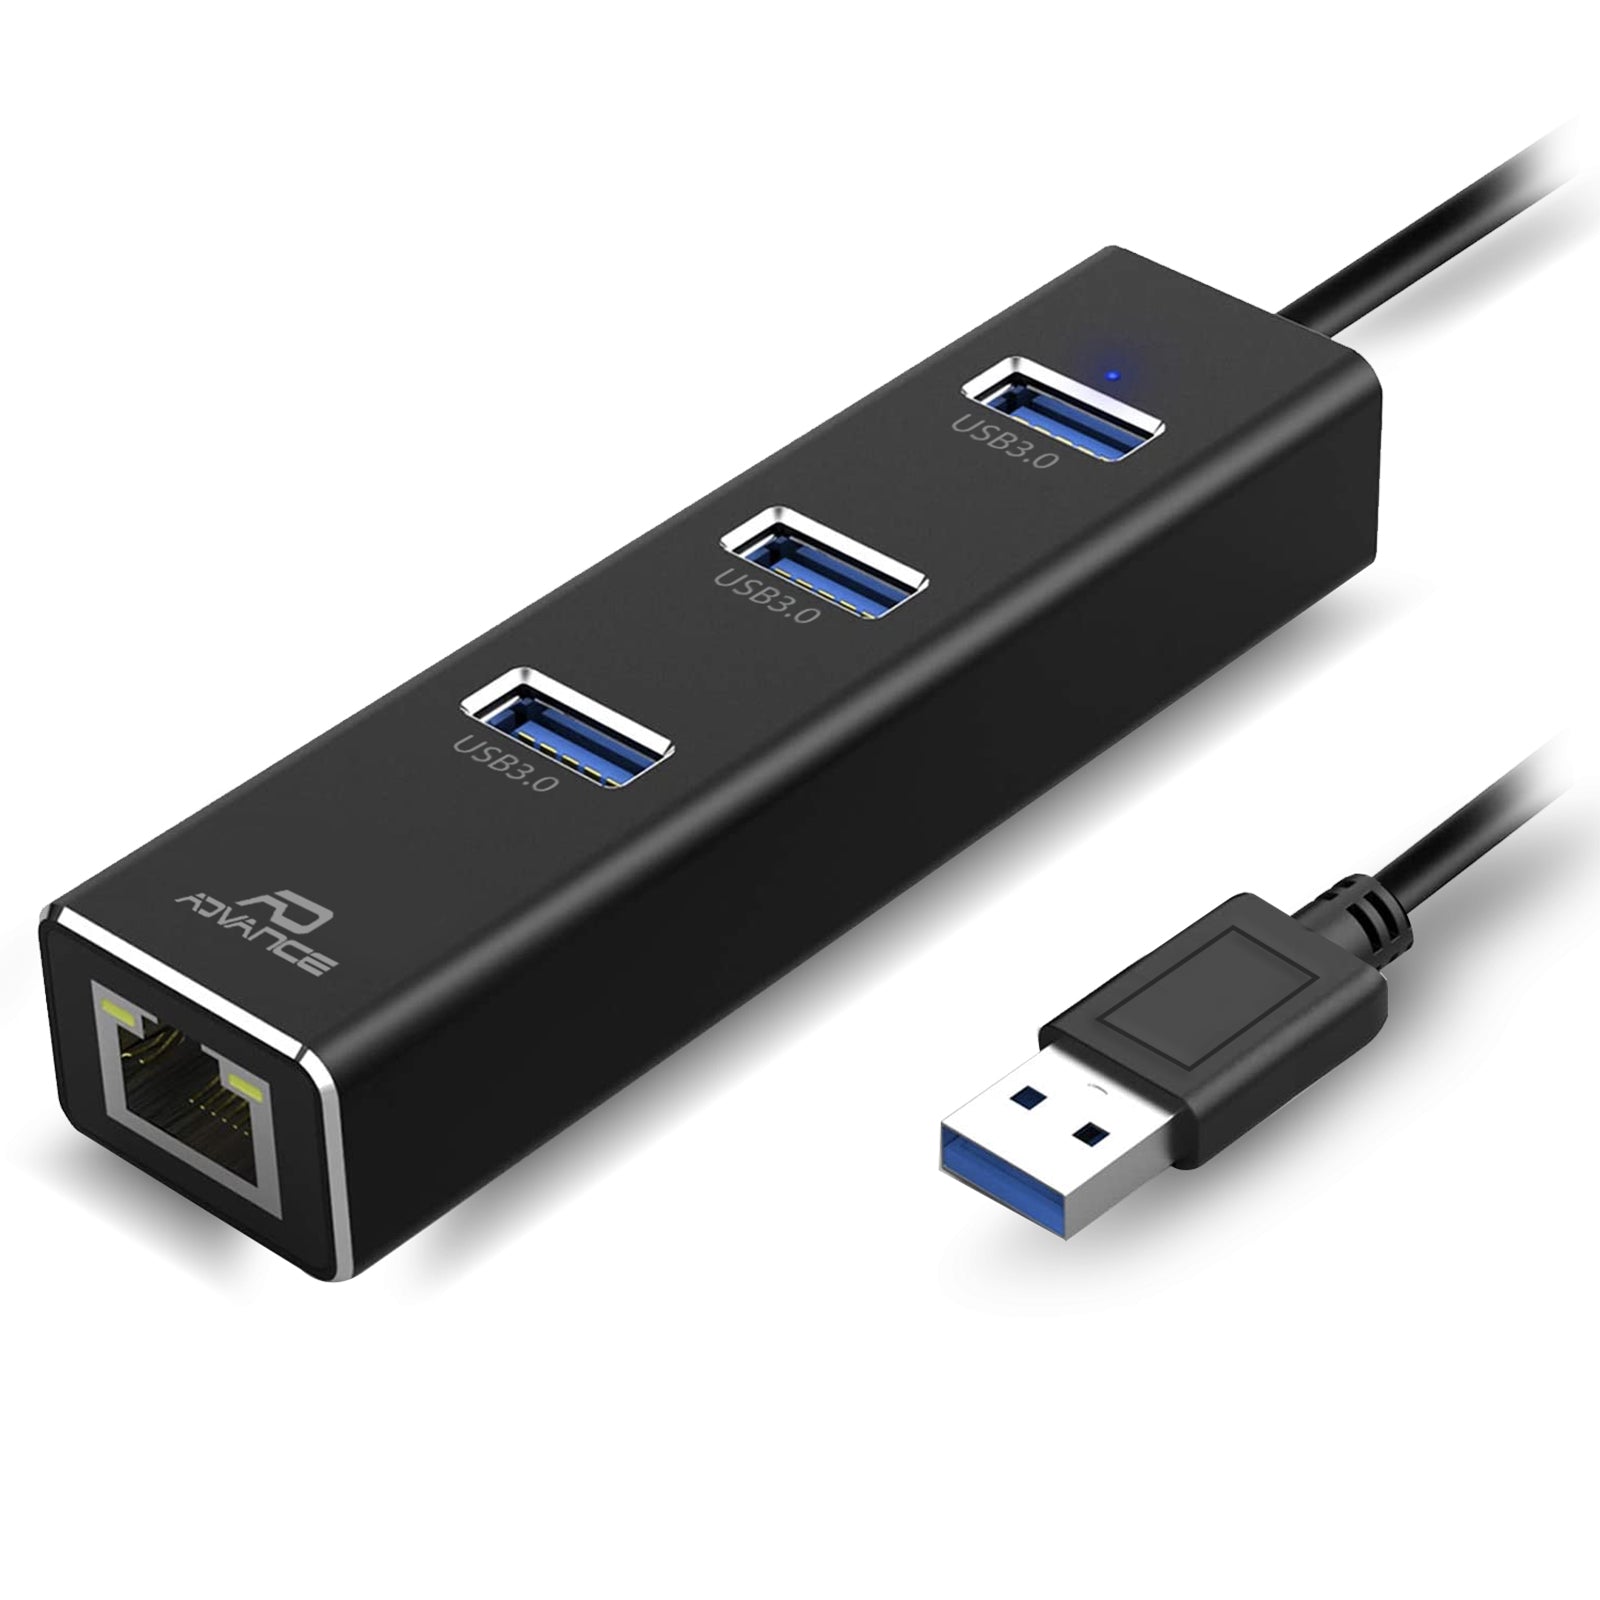 Advance - Adaptateur USB 3.0 Réseau Gigabit Ethernet RJ45 + 3 ports USB 3.0